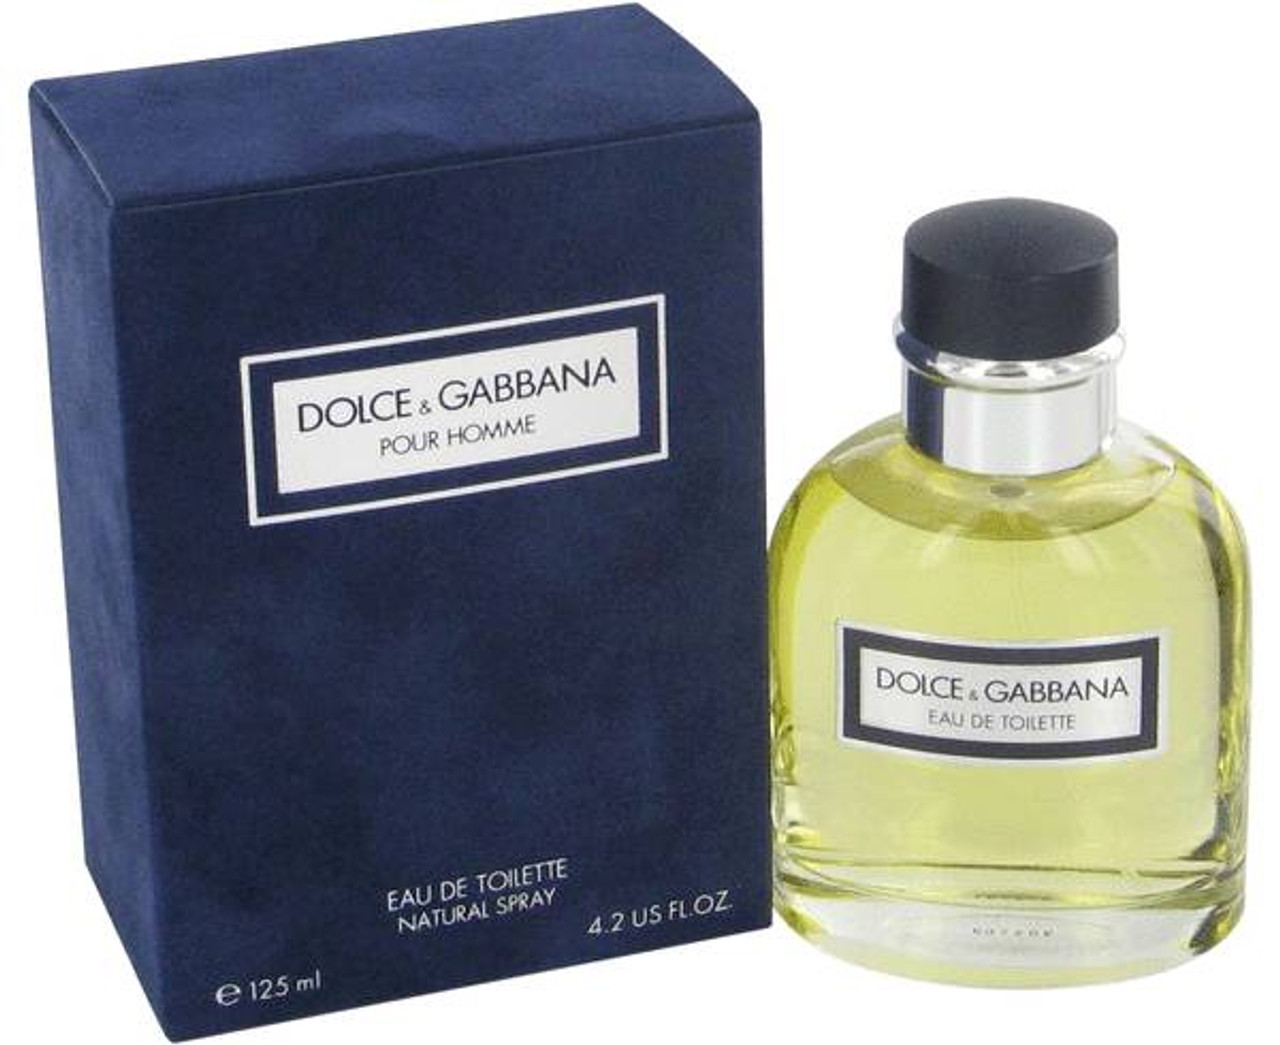 Pour Homme 125ml Eau de Toilette by Dolce & Gabbana for Men 